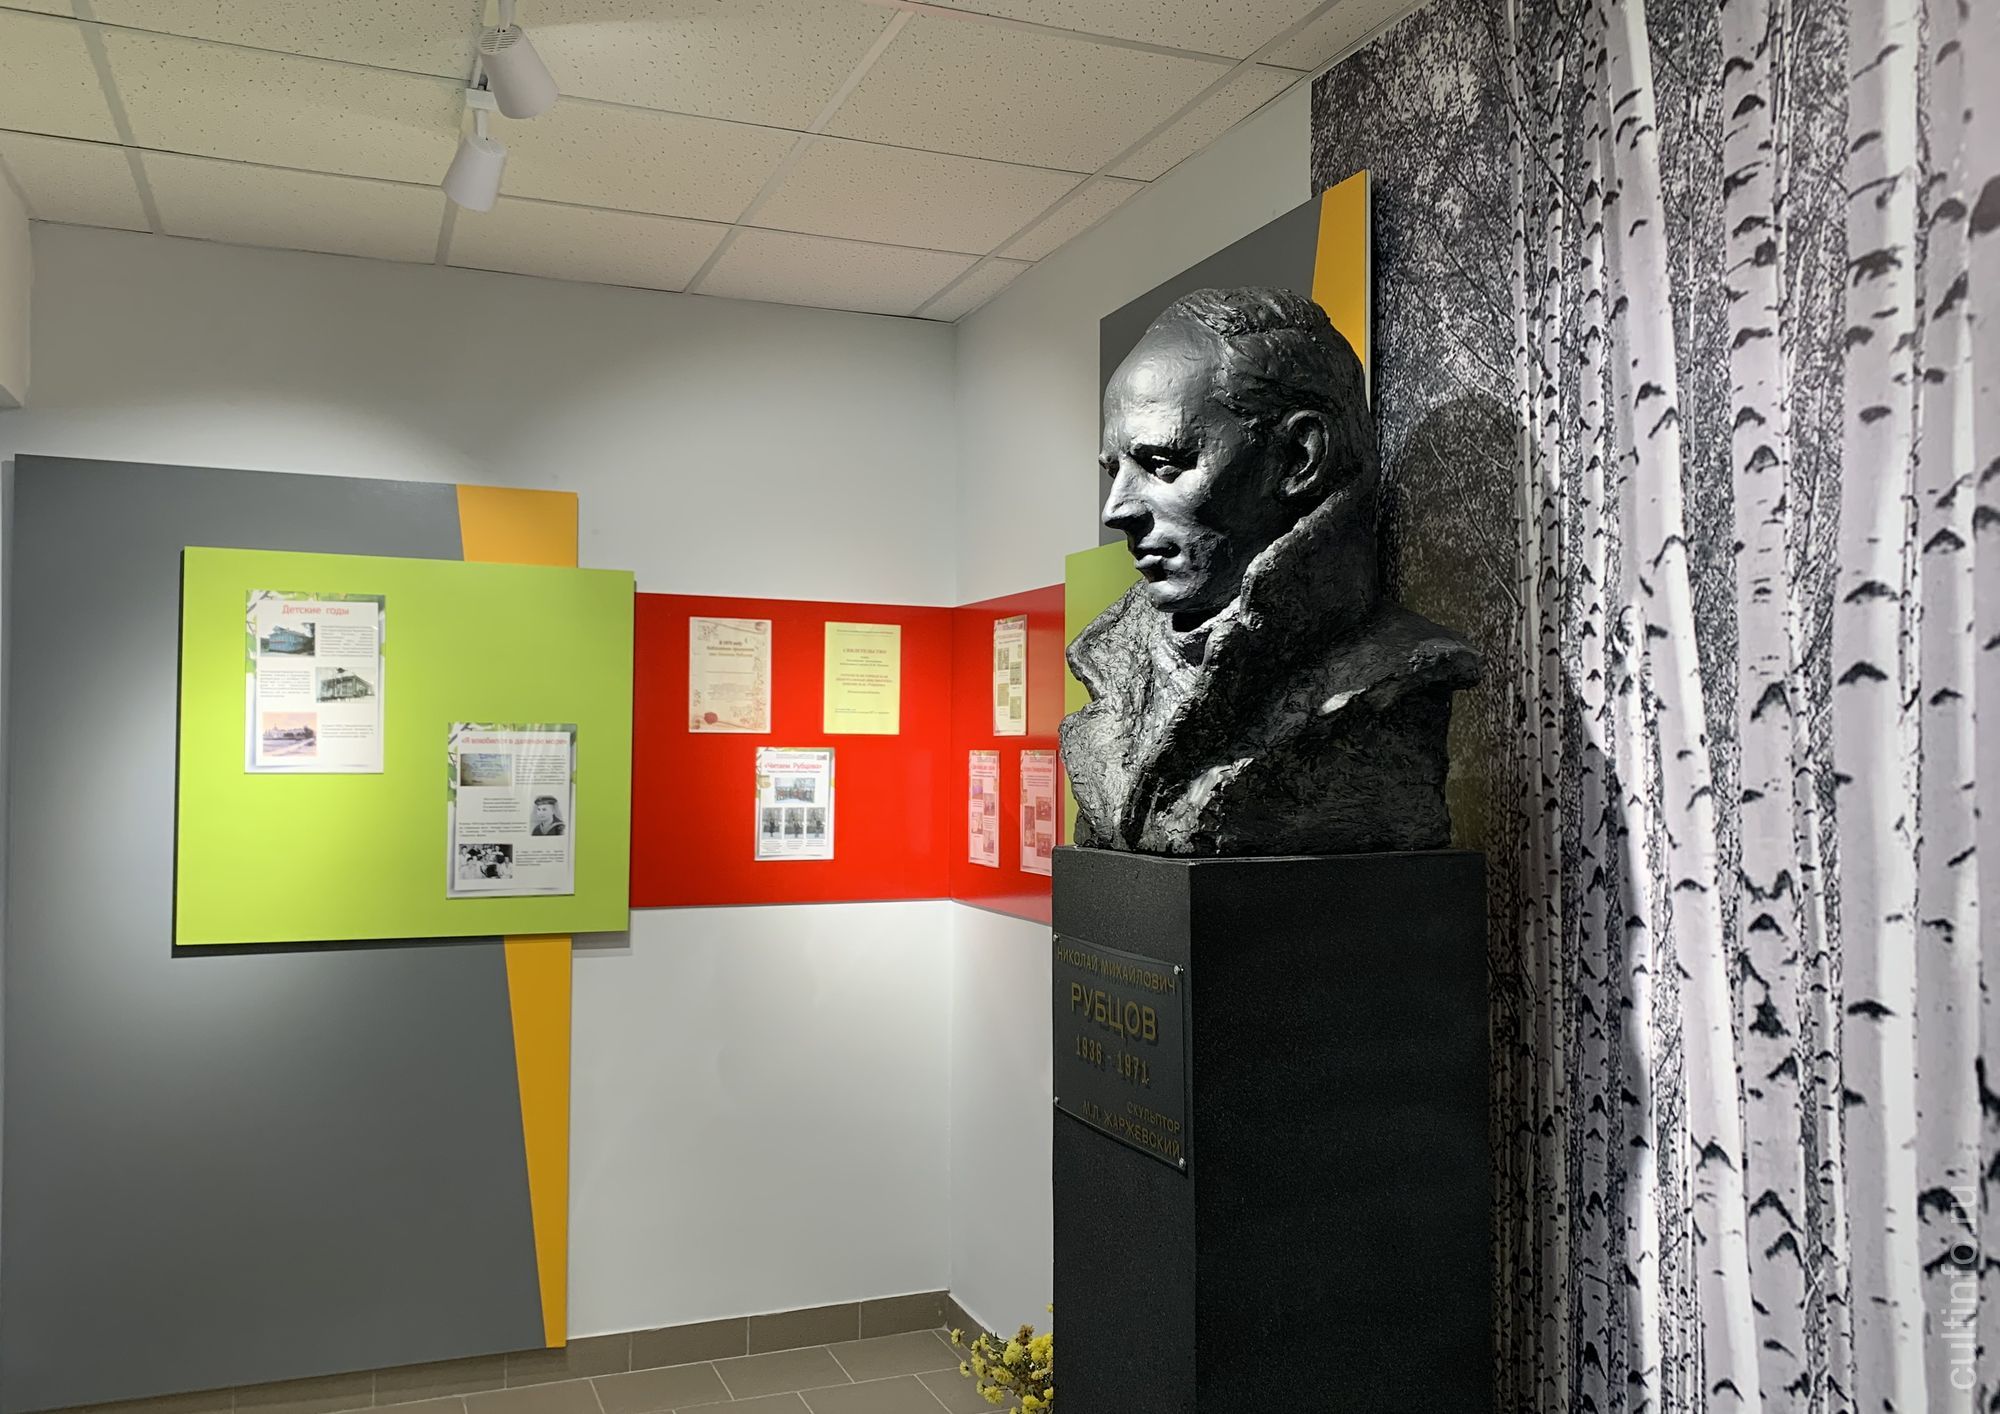 В Тотьме открылась первая в районе модельная библиотека – Центральная районная библиотека им. Николая Рубцова